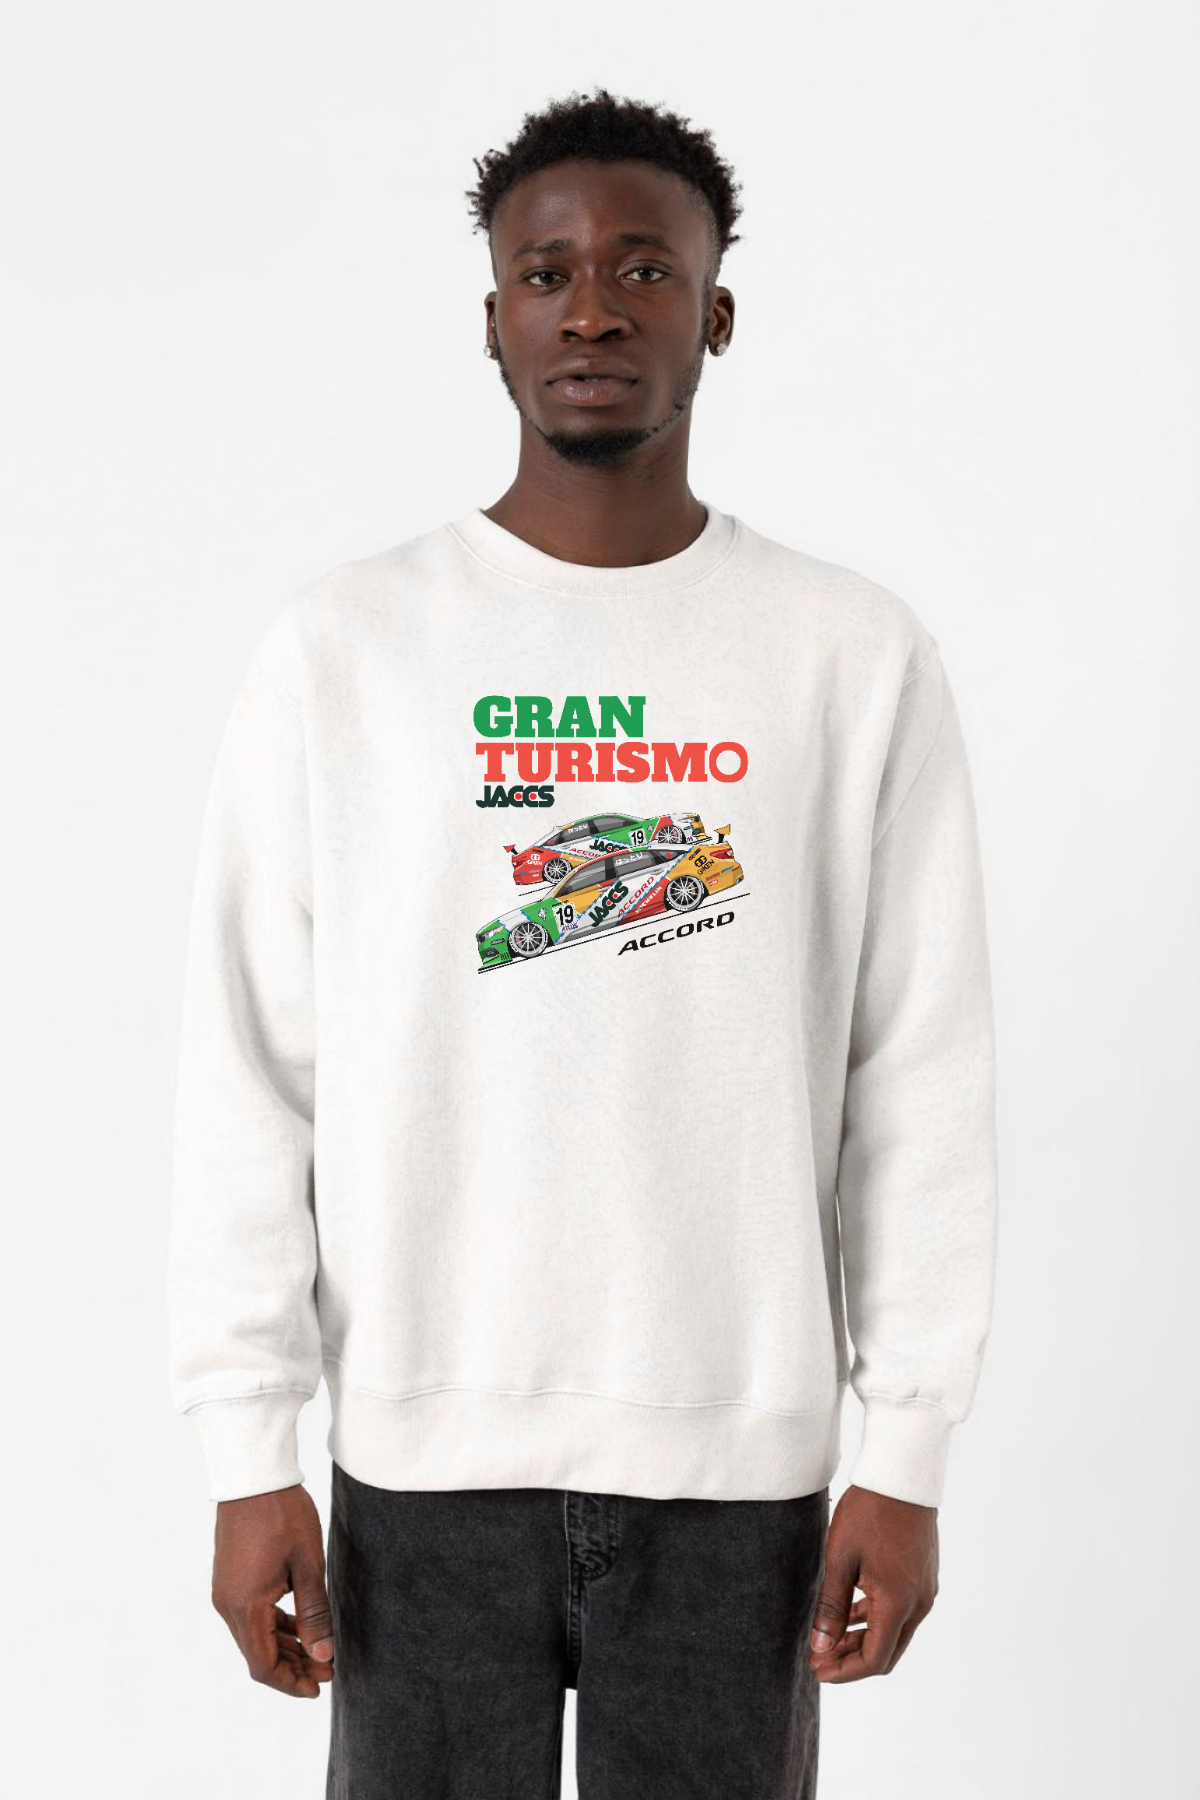 Gran Turismo Jaccs Accord Beyaz Erkek 2ip Sweatshirt